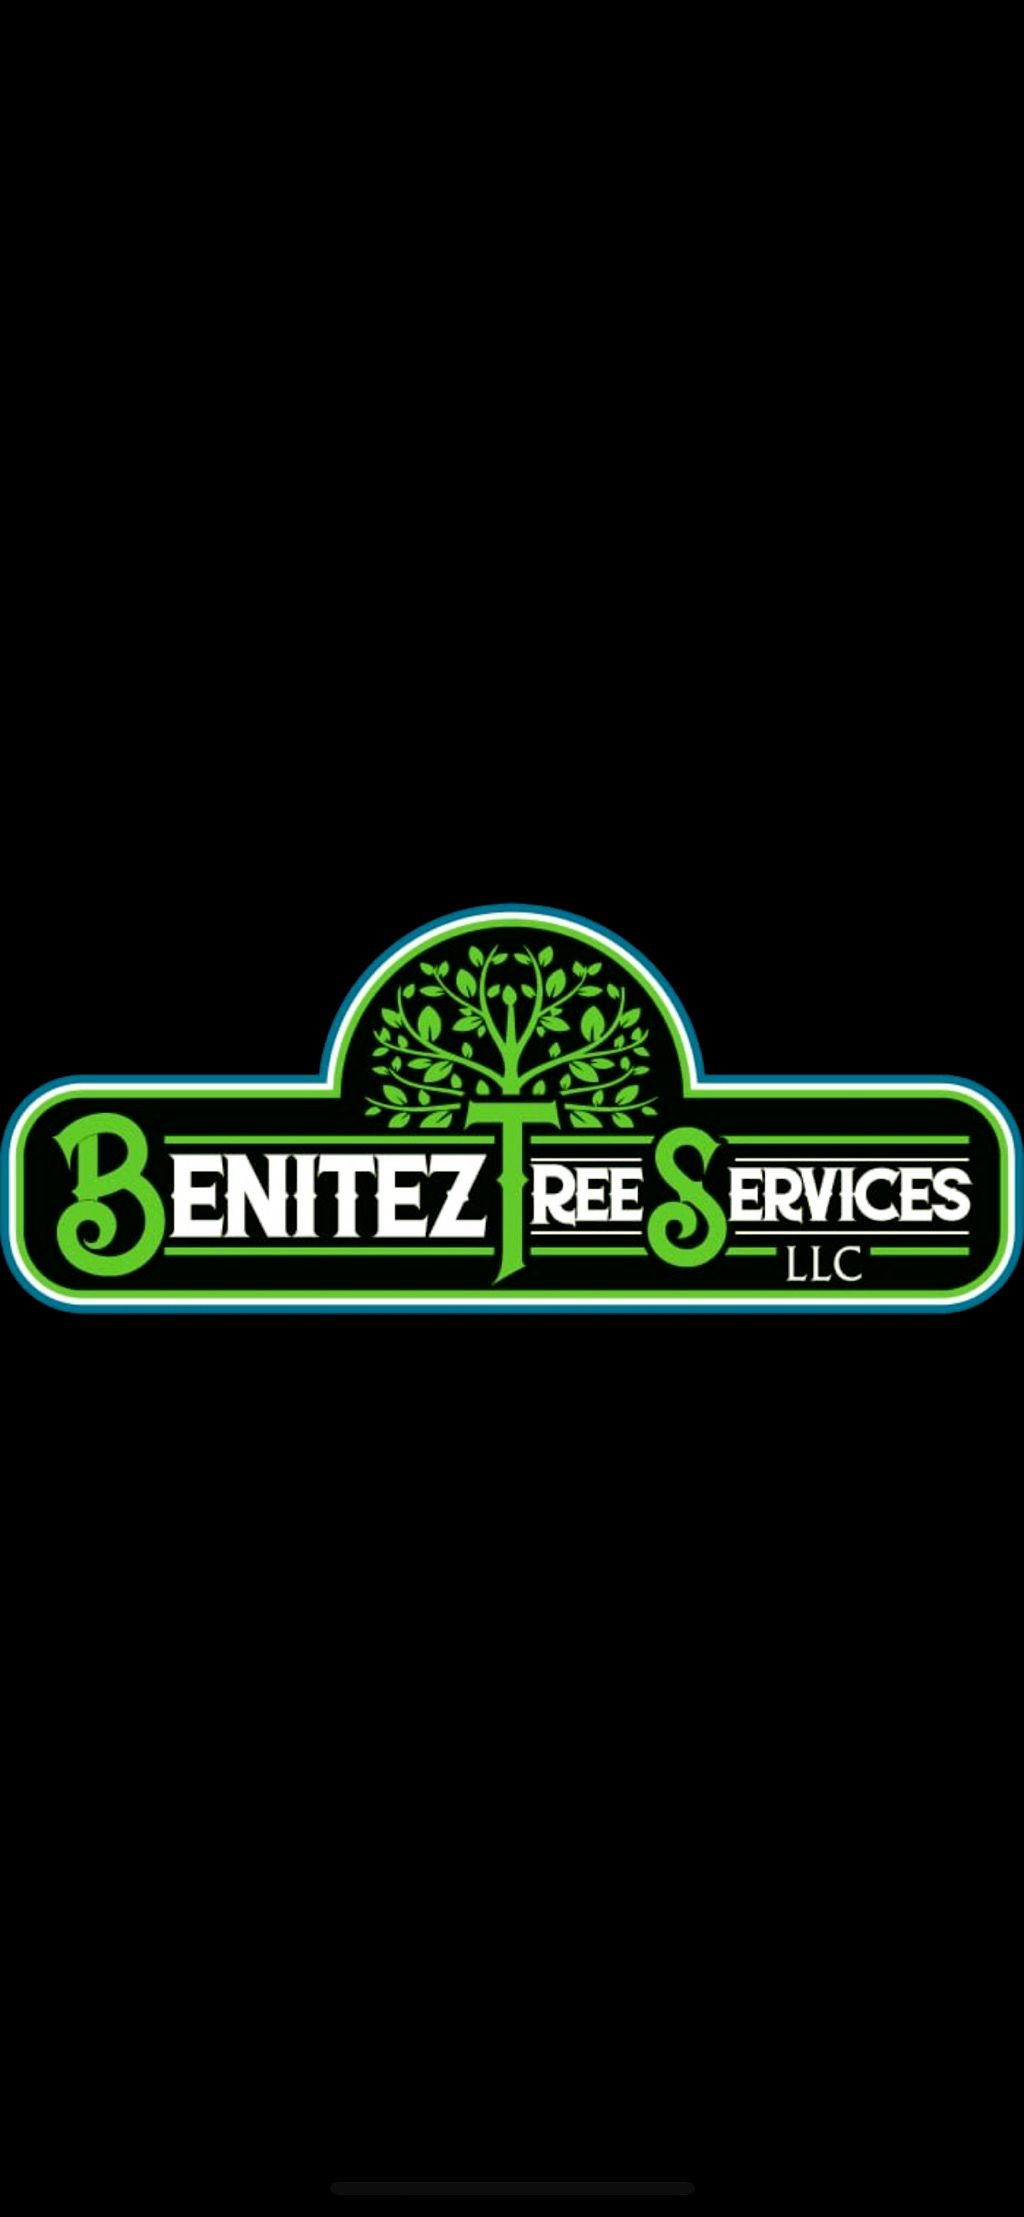 BENITEZ’S TREE SERVICES LLC